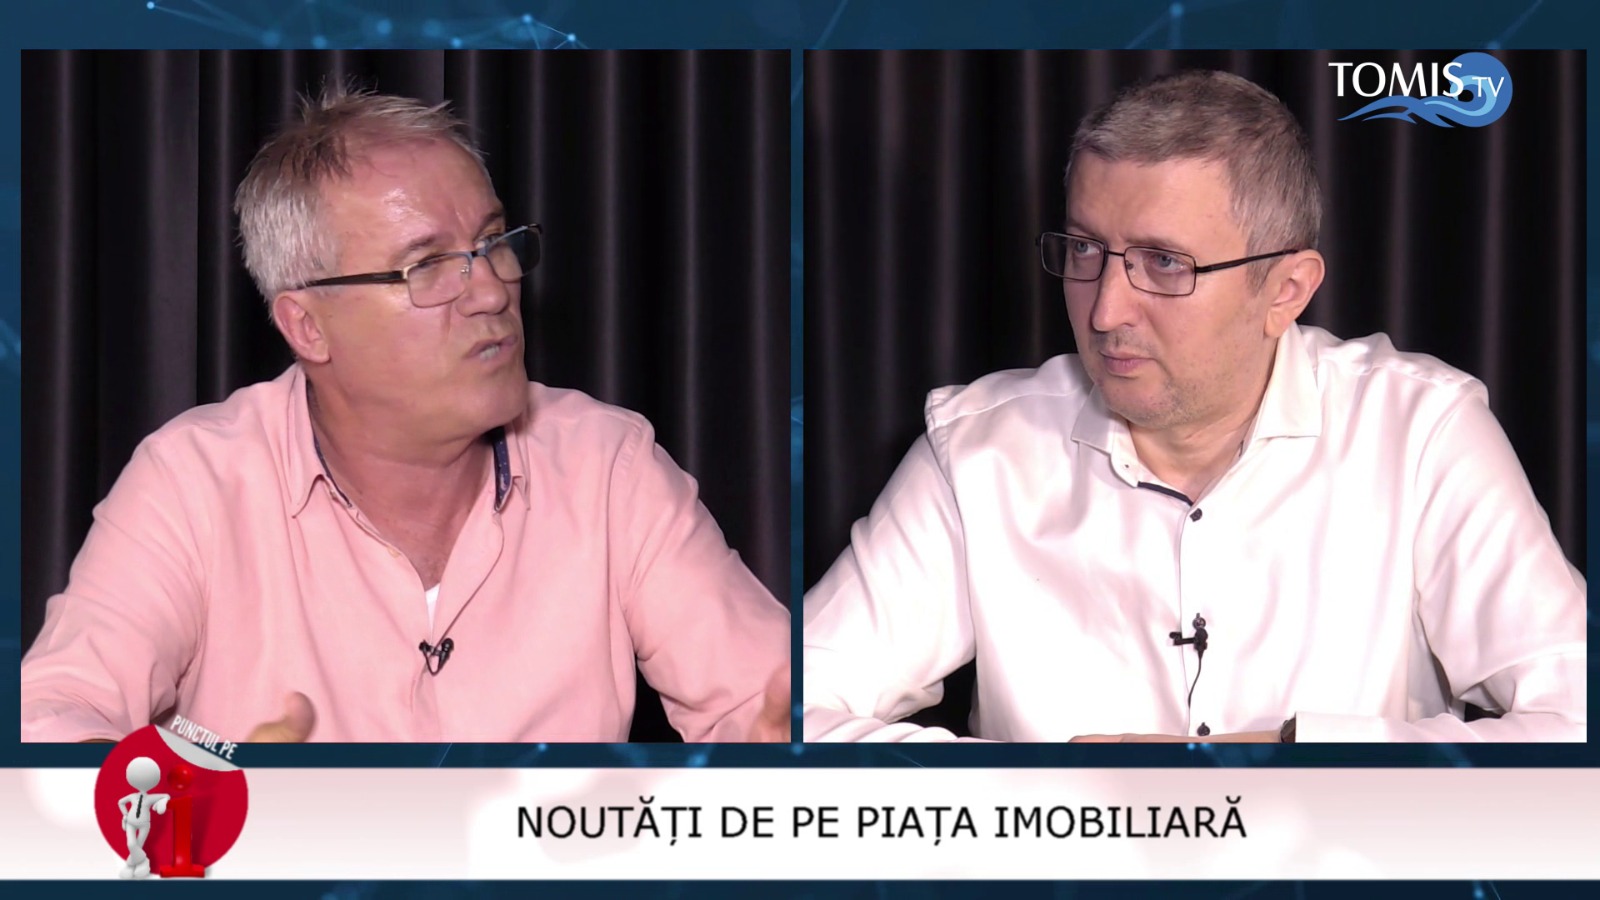 Noutăți de pe piața imobiliară, cu Marian Mureșanu și Cristian Hagi, la Tomis TV